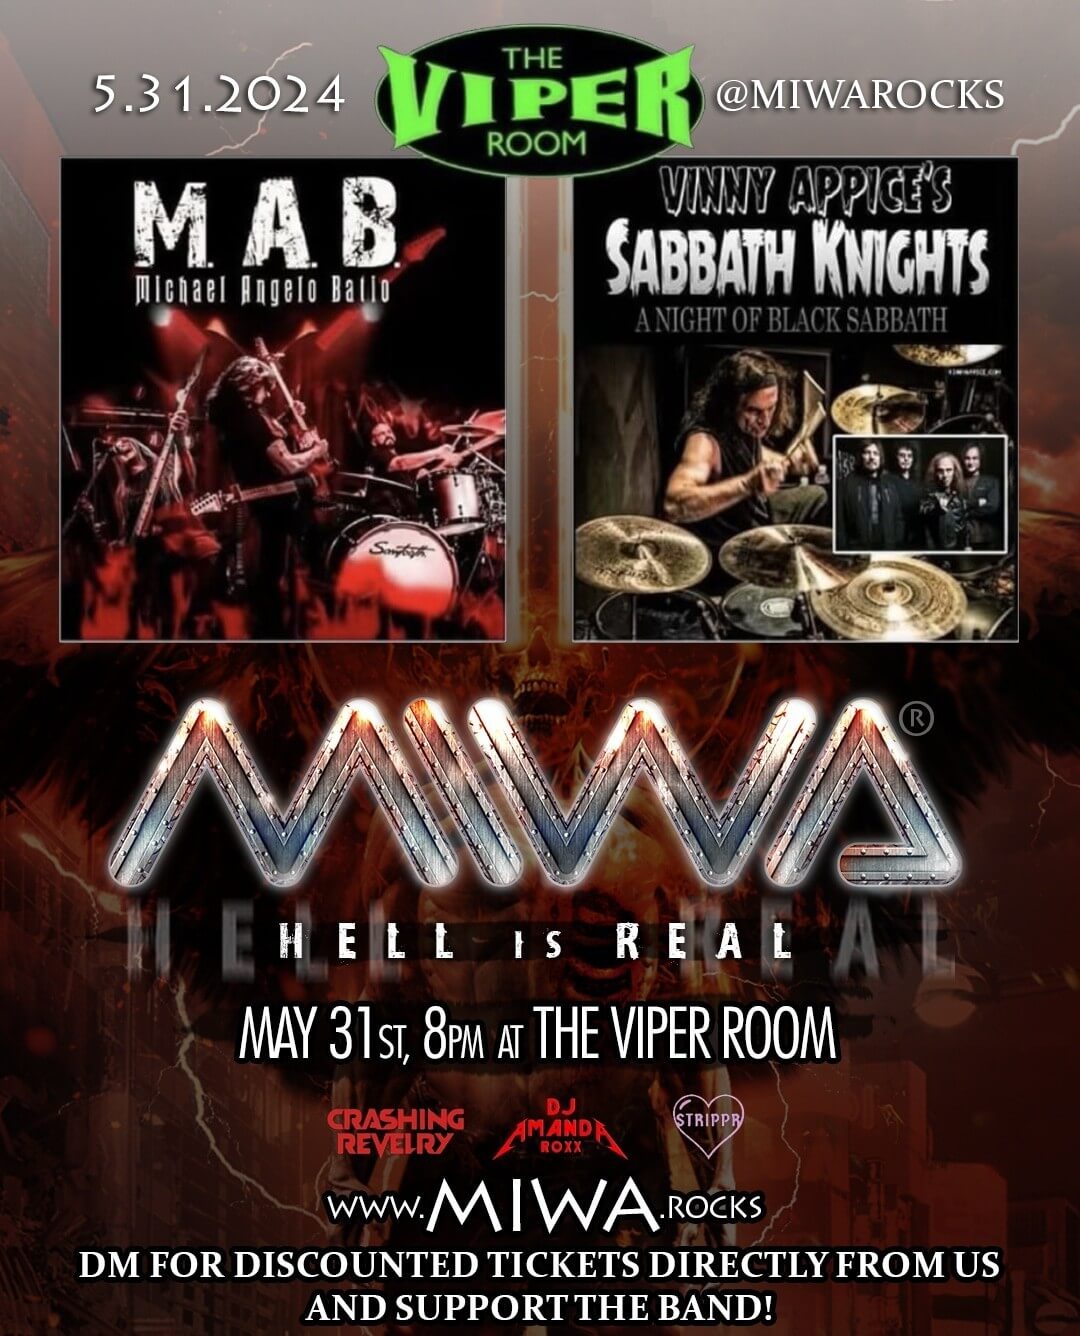 MIWA - Viper Room - Michael Angelo Batio - Vinny Appice's Sabbath Knights - MIWAROCKS - HEAVY METAL